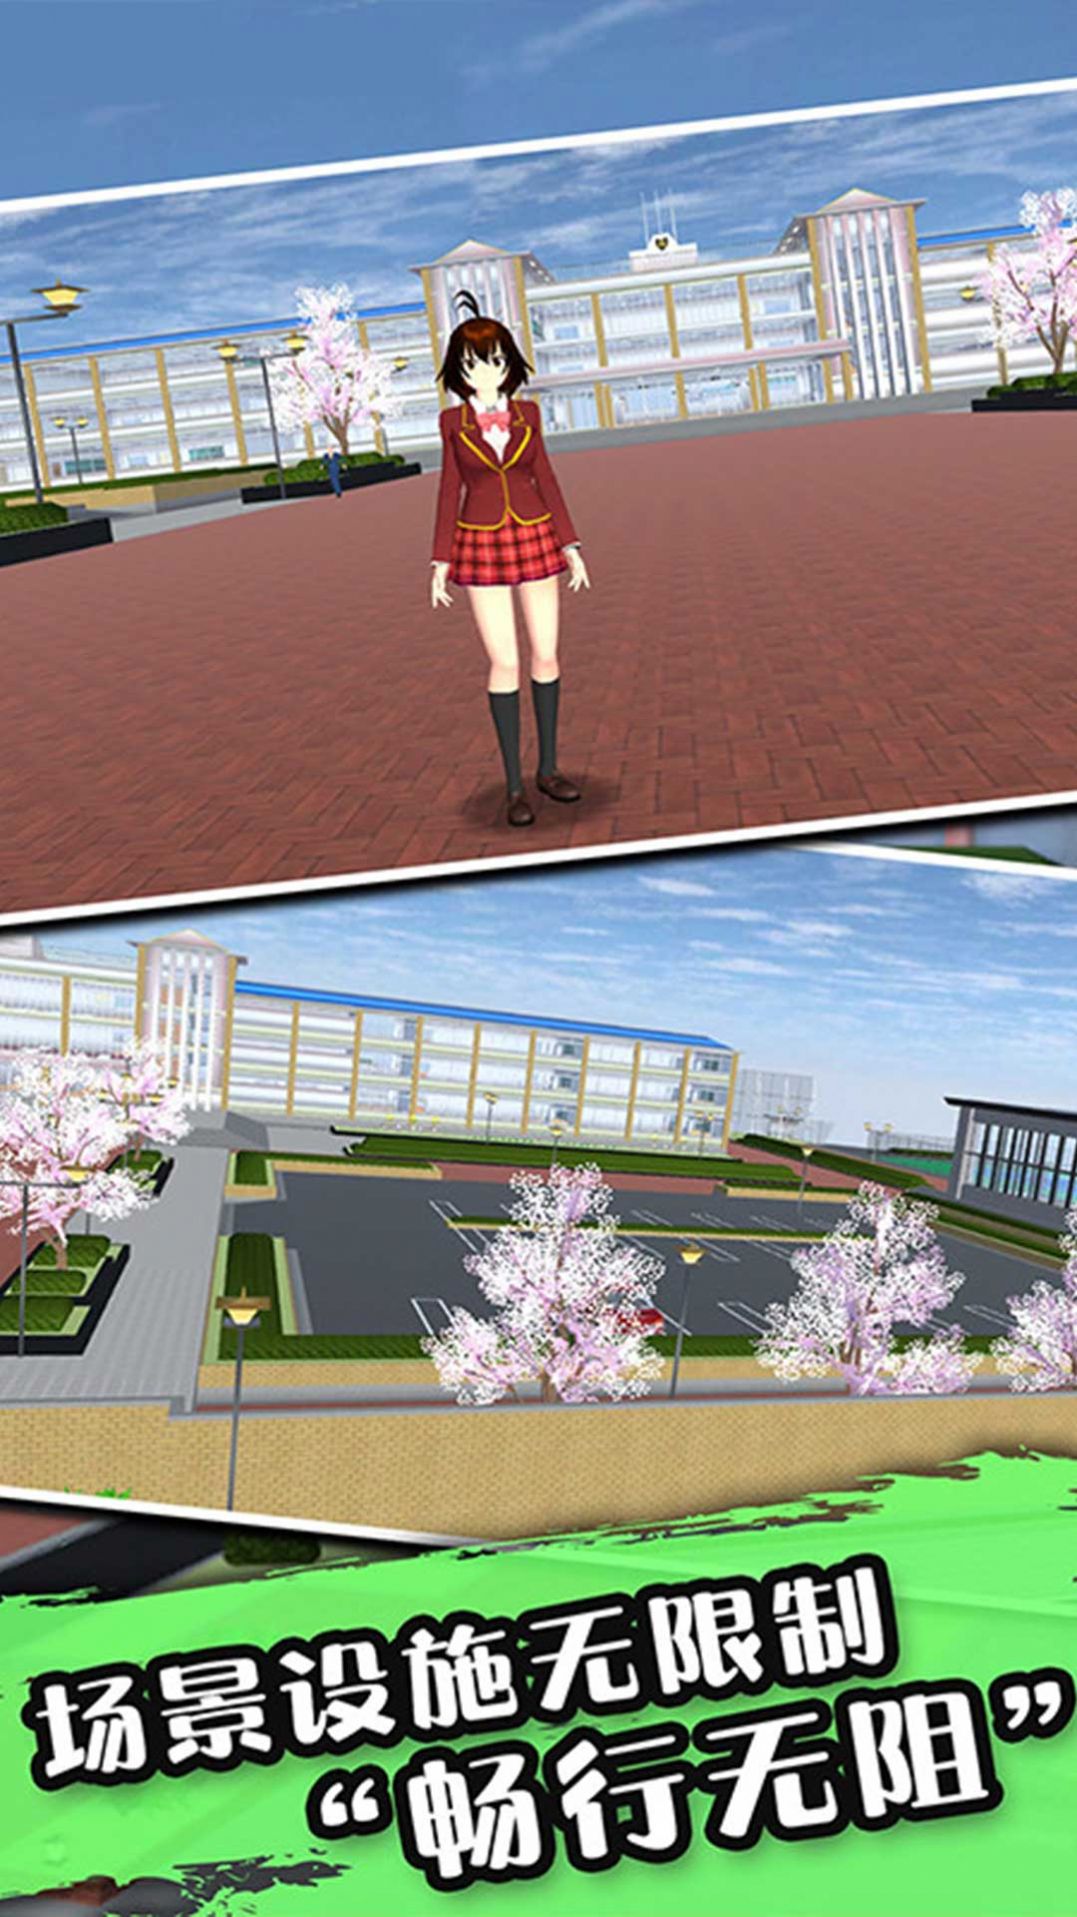 热血樱花模拟高校游戏官方中文版1